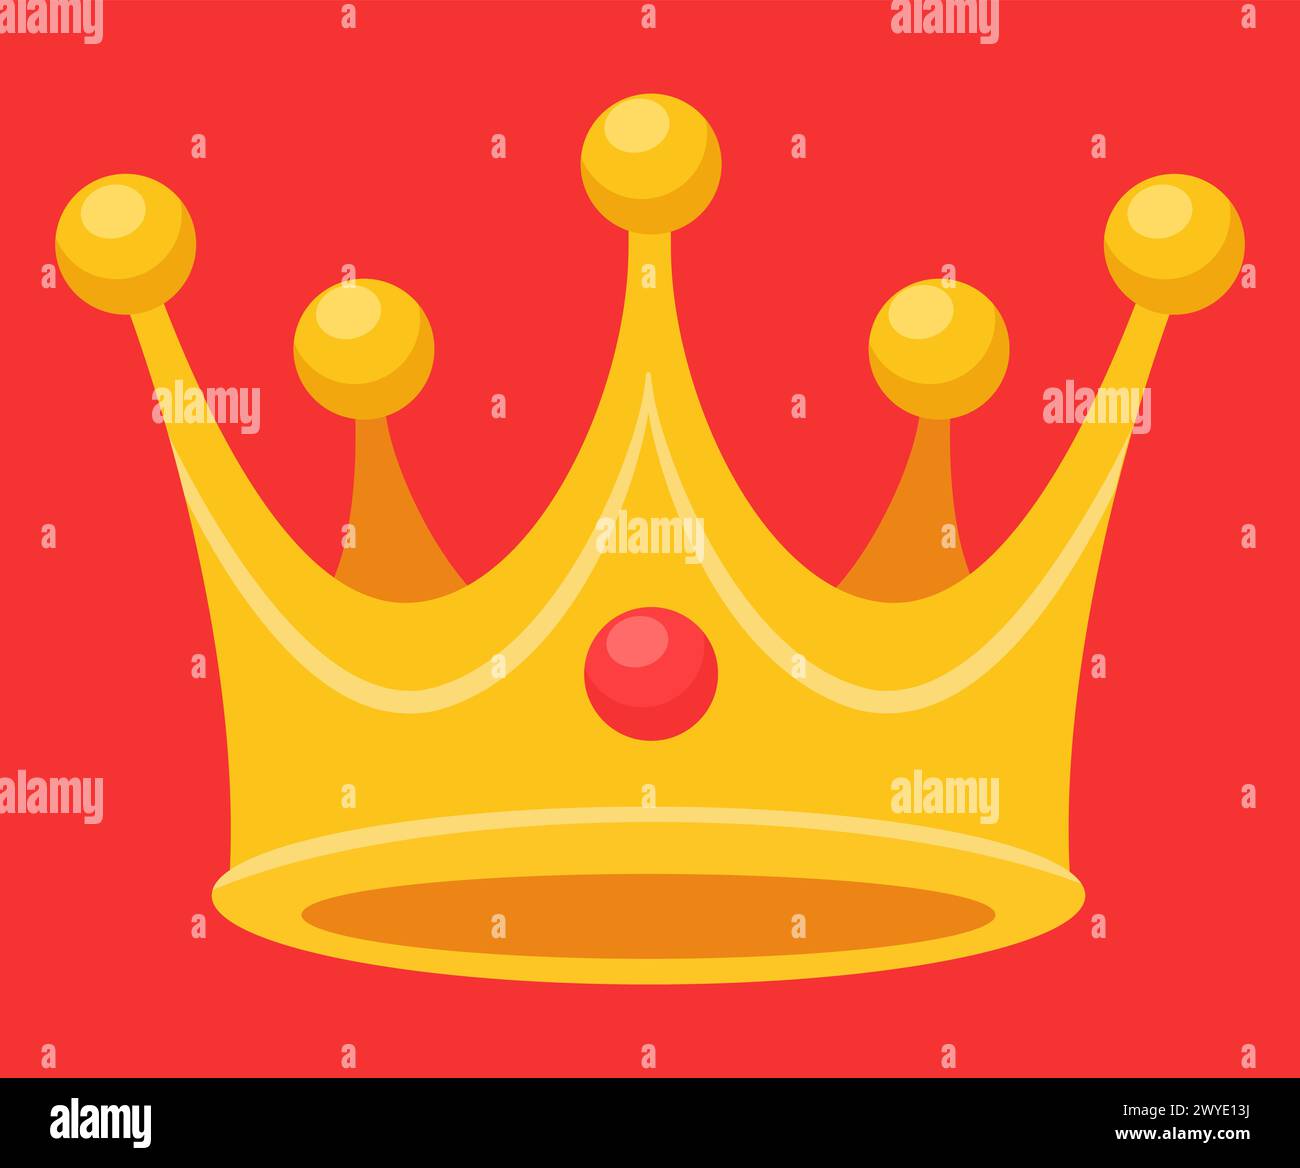 Illustration de la conception plate de la couronne royale isolée Illustration de Vecteur